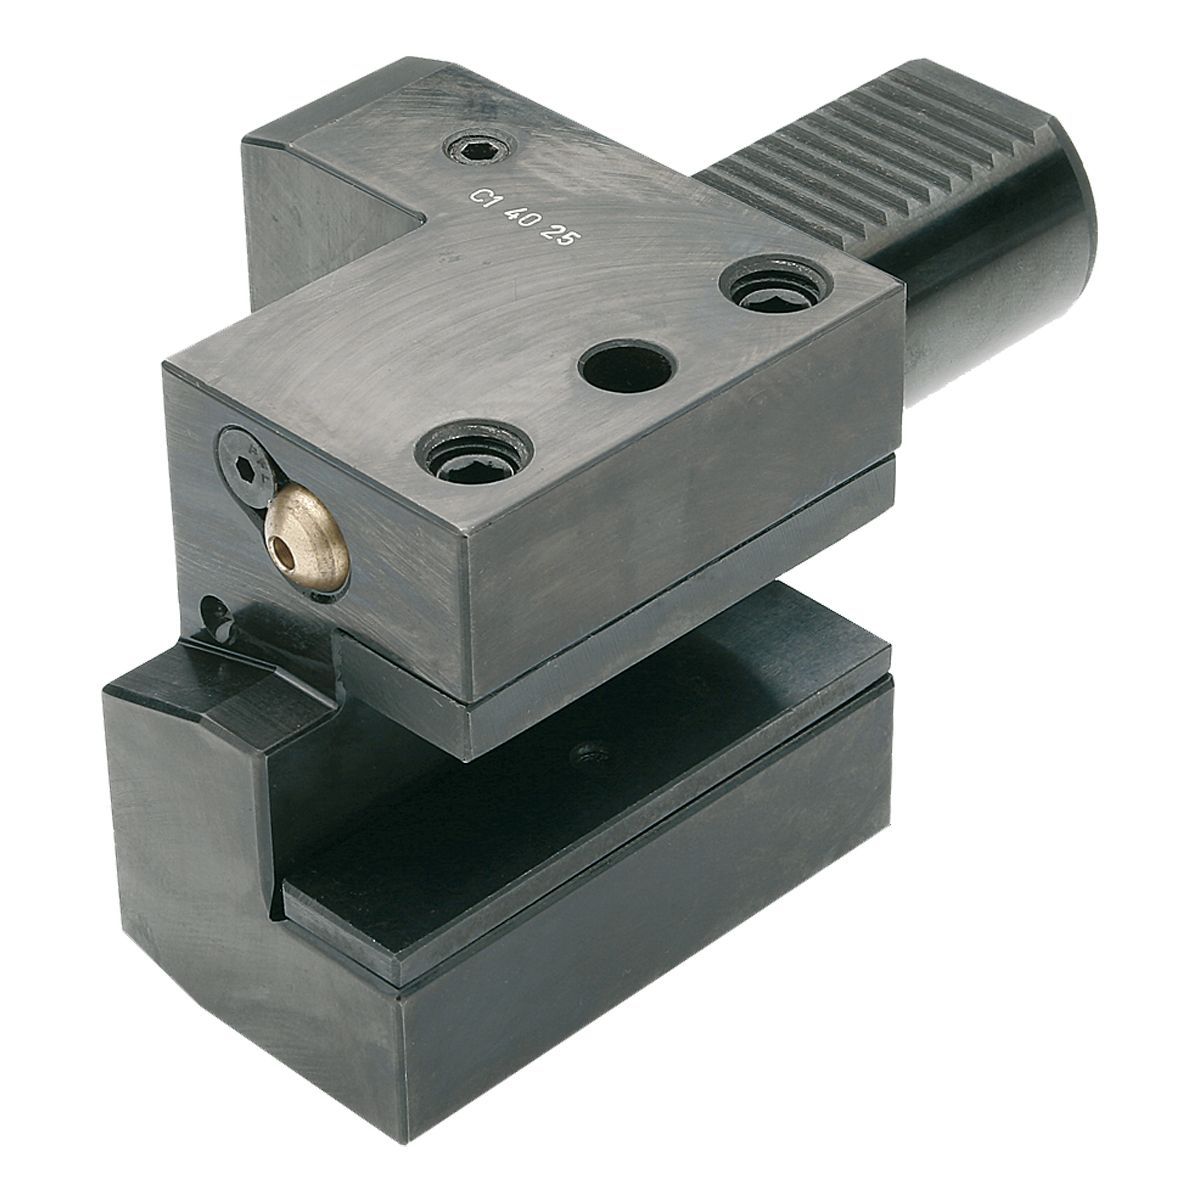 Axial-Werkzeughalter C1-25x16 DIN 69880 (ISO 10889)